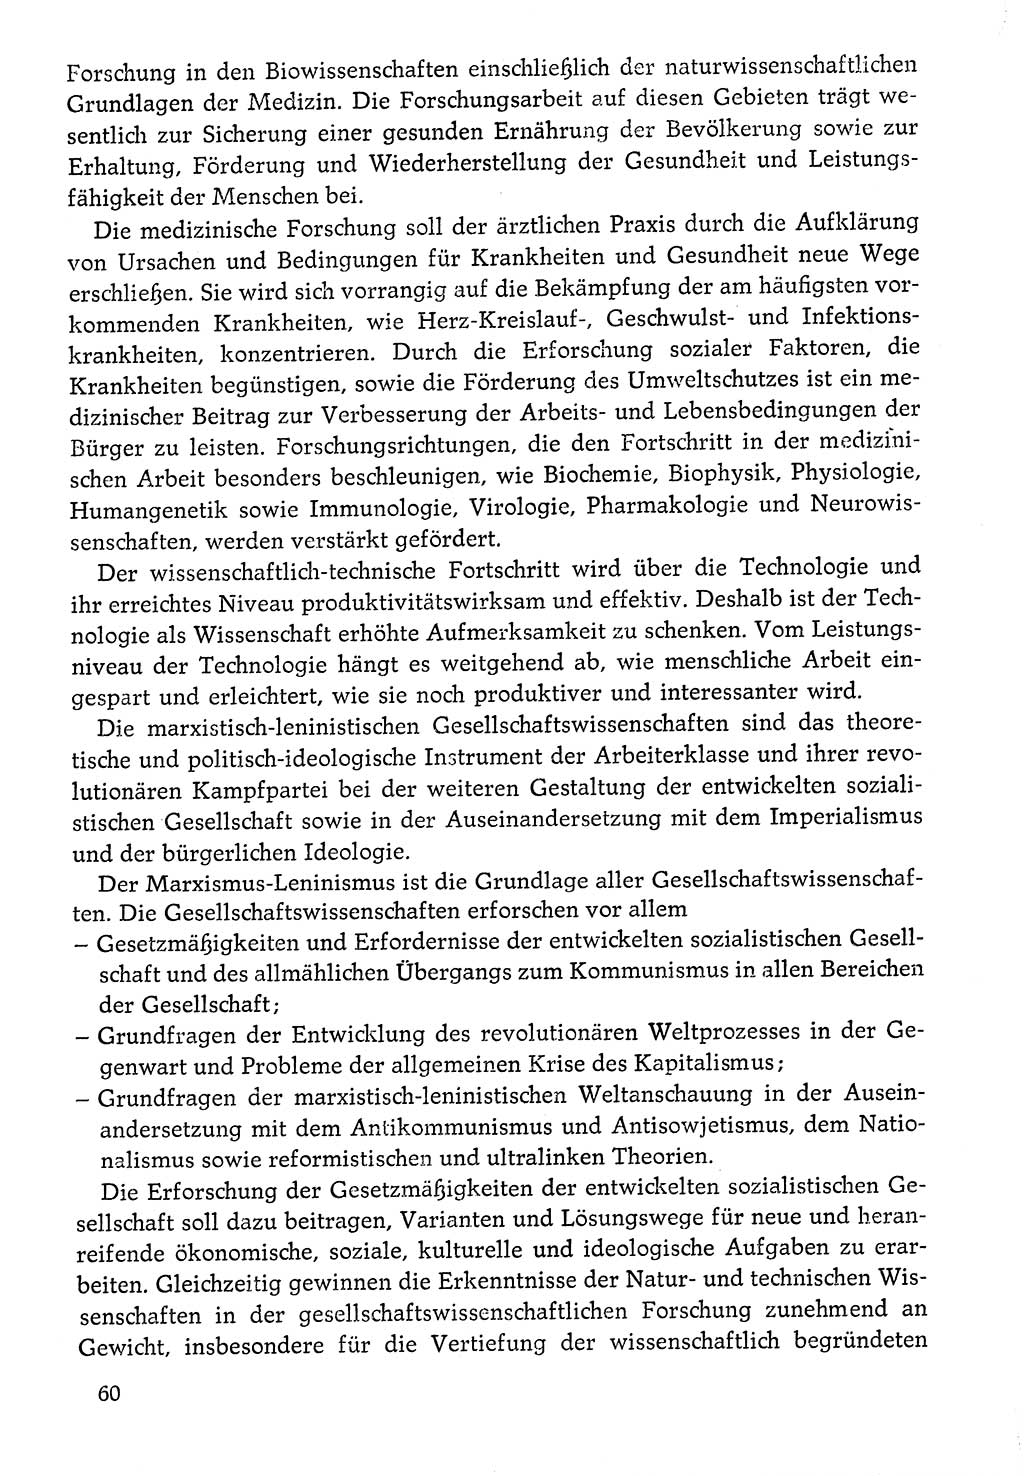 Dokumente der Sozialistischen Einheitspartei Deutschlands (SED) [Deutsche Demokratische Republik (DDR)] 1976-1977, Seite 60 (Dok. SED DDR 1976-1977, S. 60)